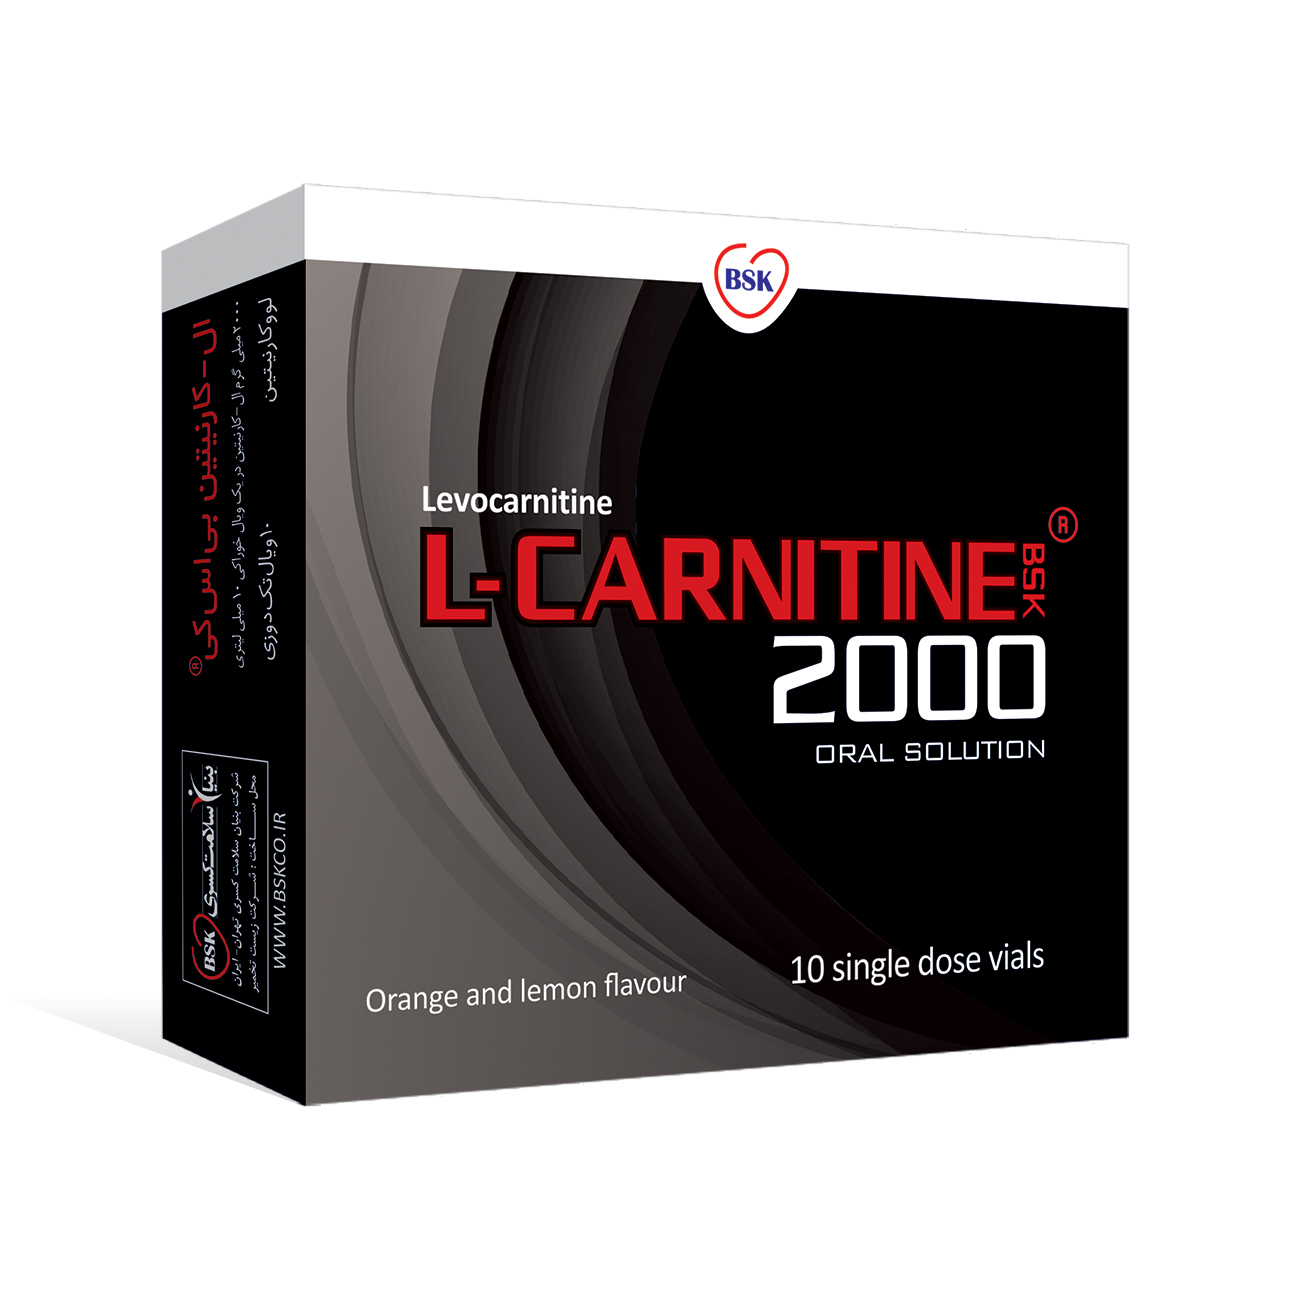 L carnitine202000 - منابع طبیعی ال کارنیتین (چربی سوز طبیعی)